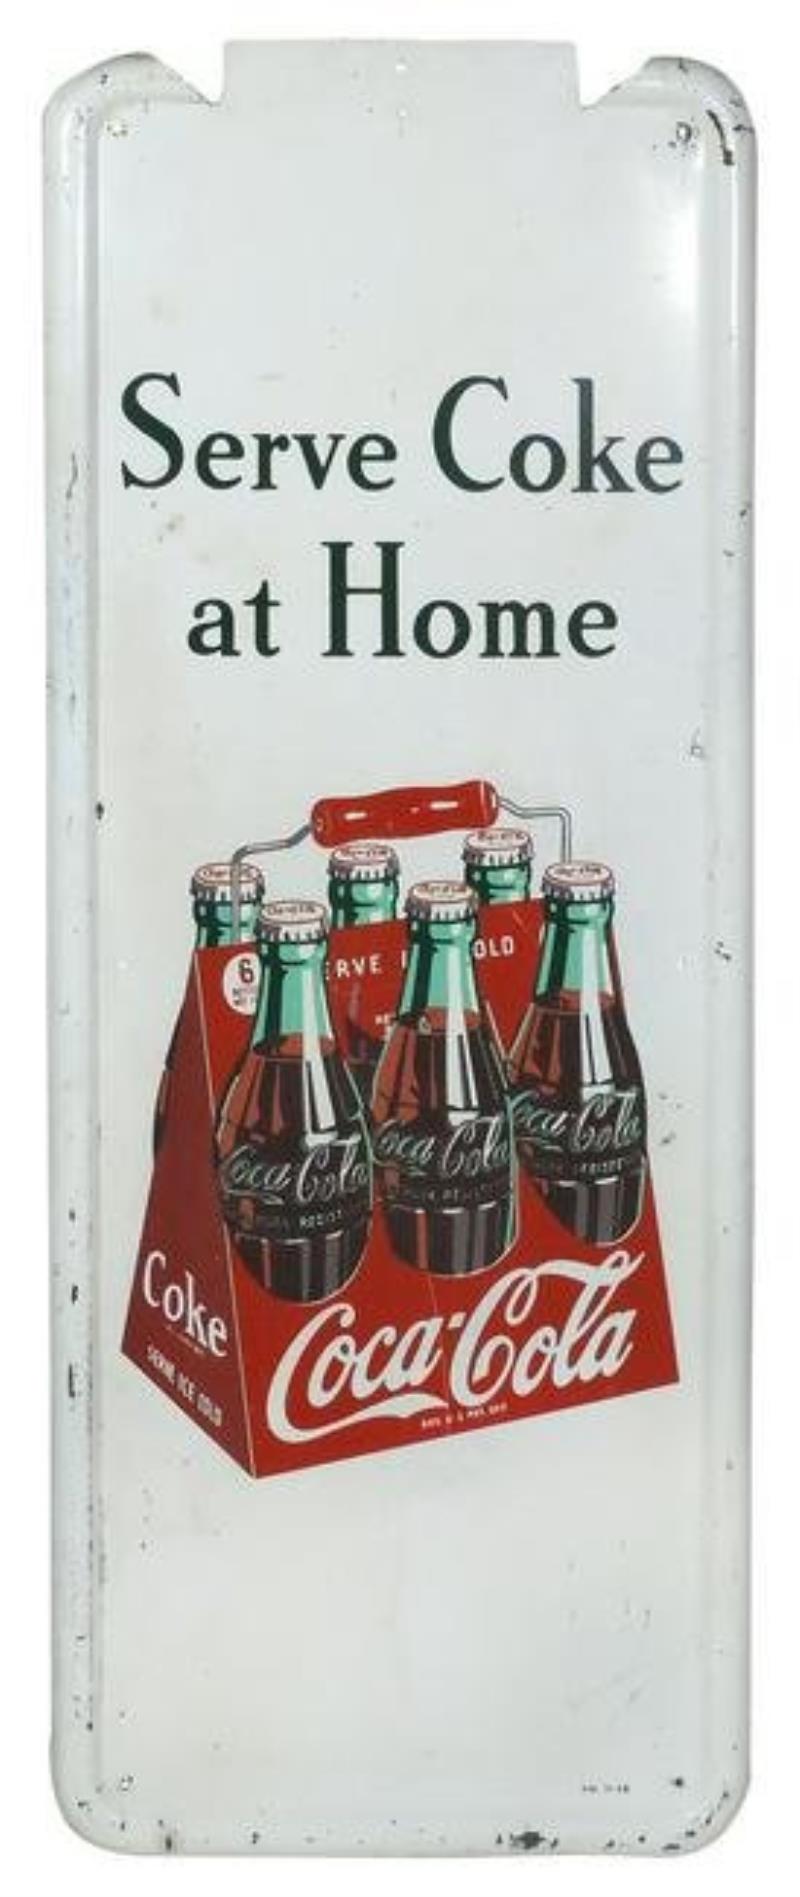 Coca-Cola sign, "Serve Coke at Home", self-framed metal